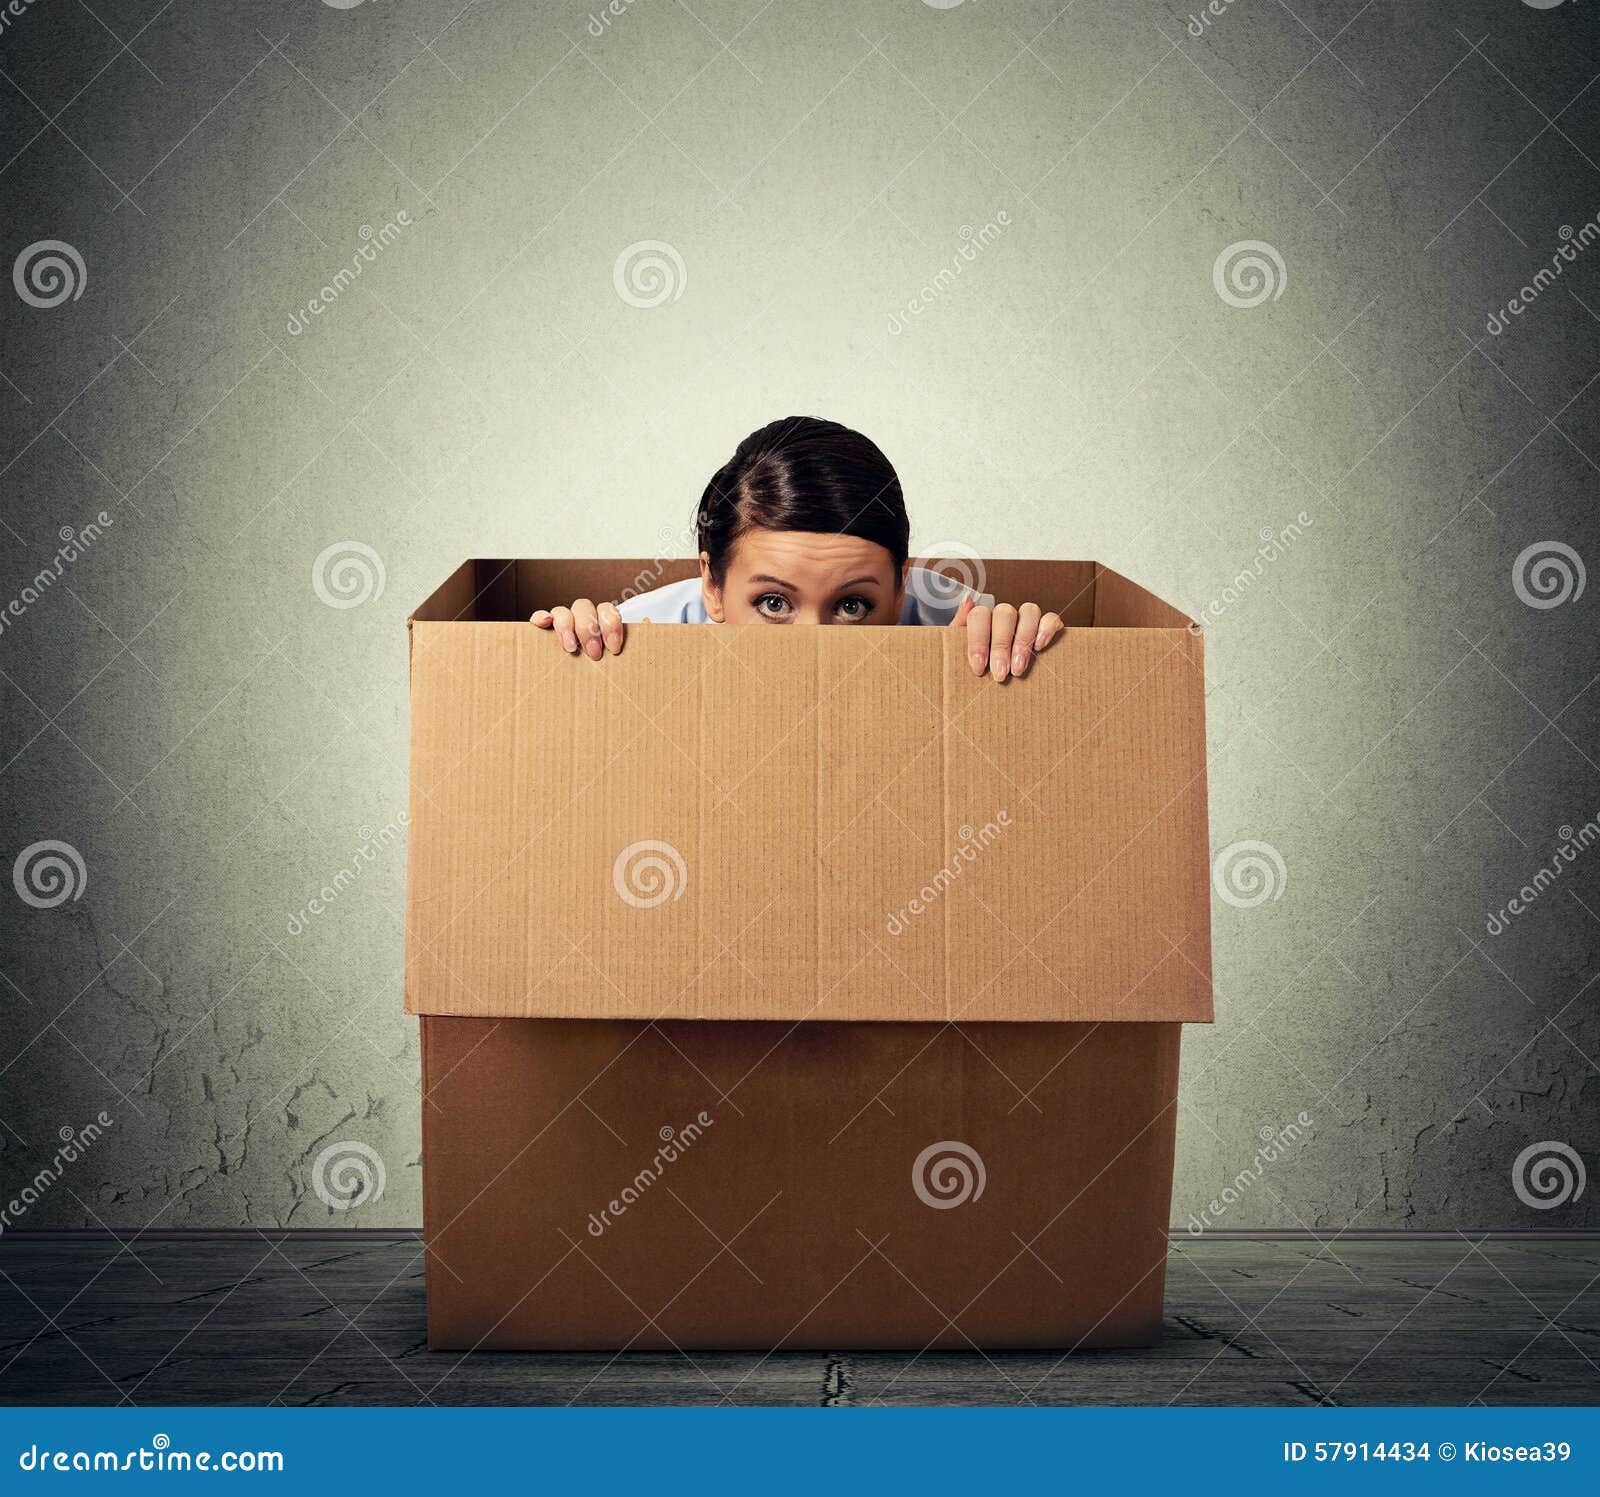 woman hiding in a carton box